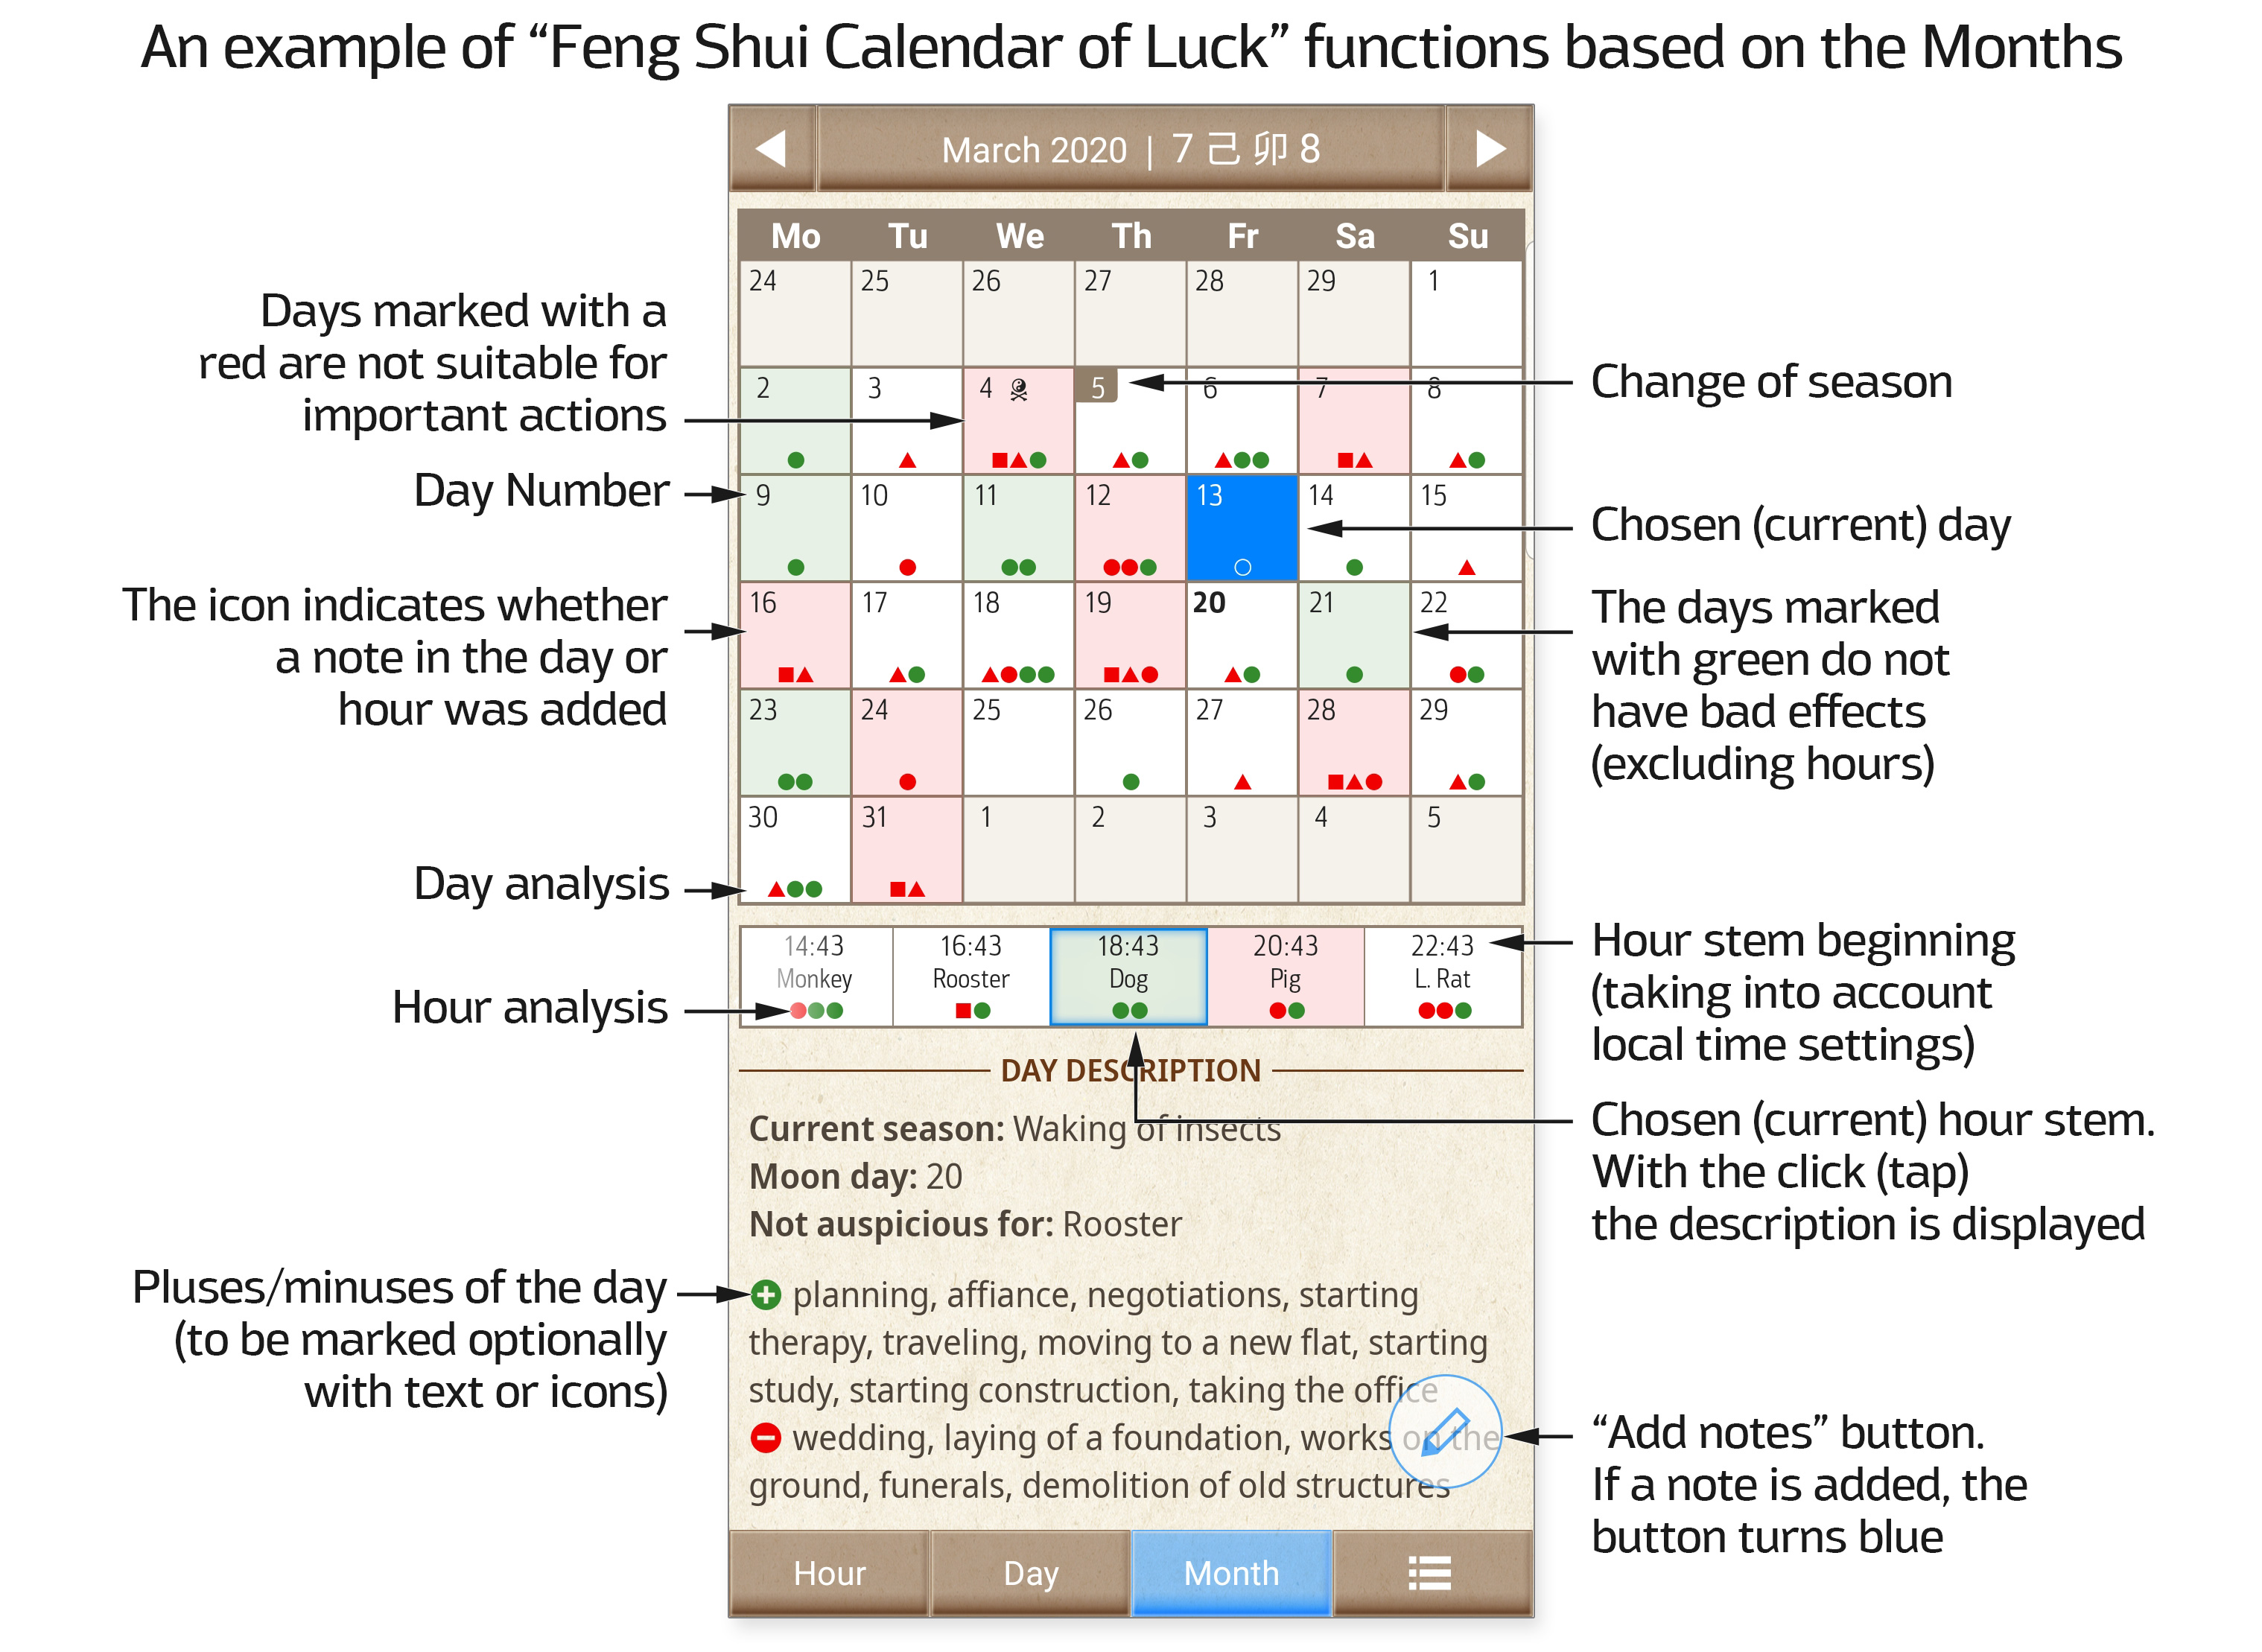 Feng Shui Calendar of Luck